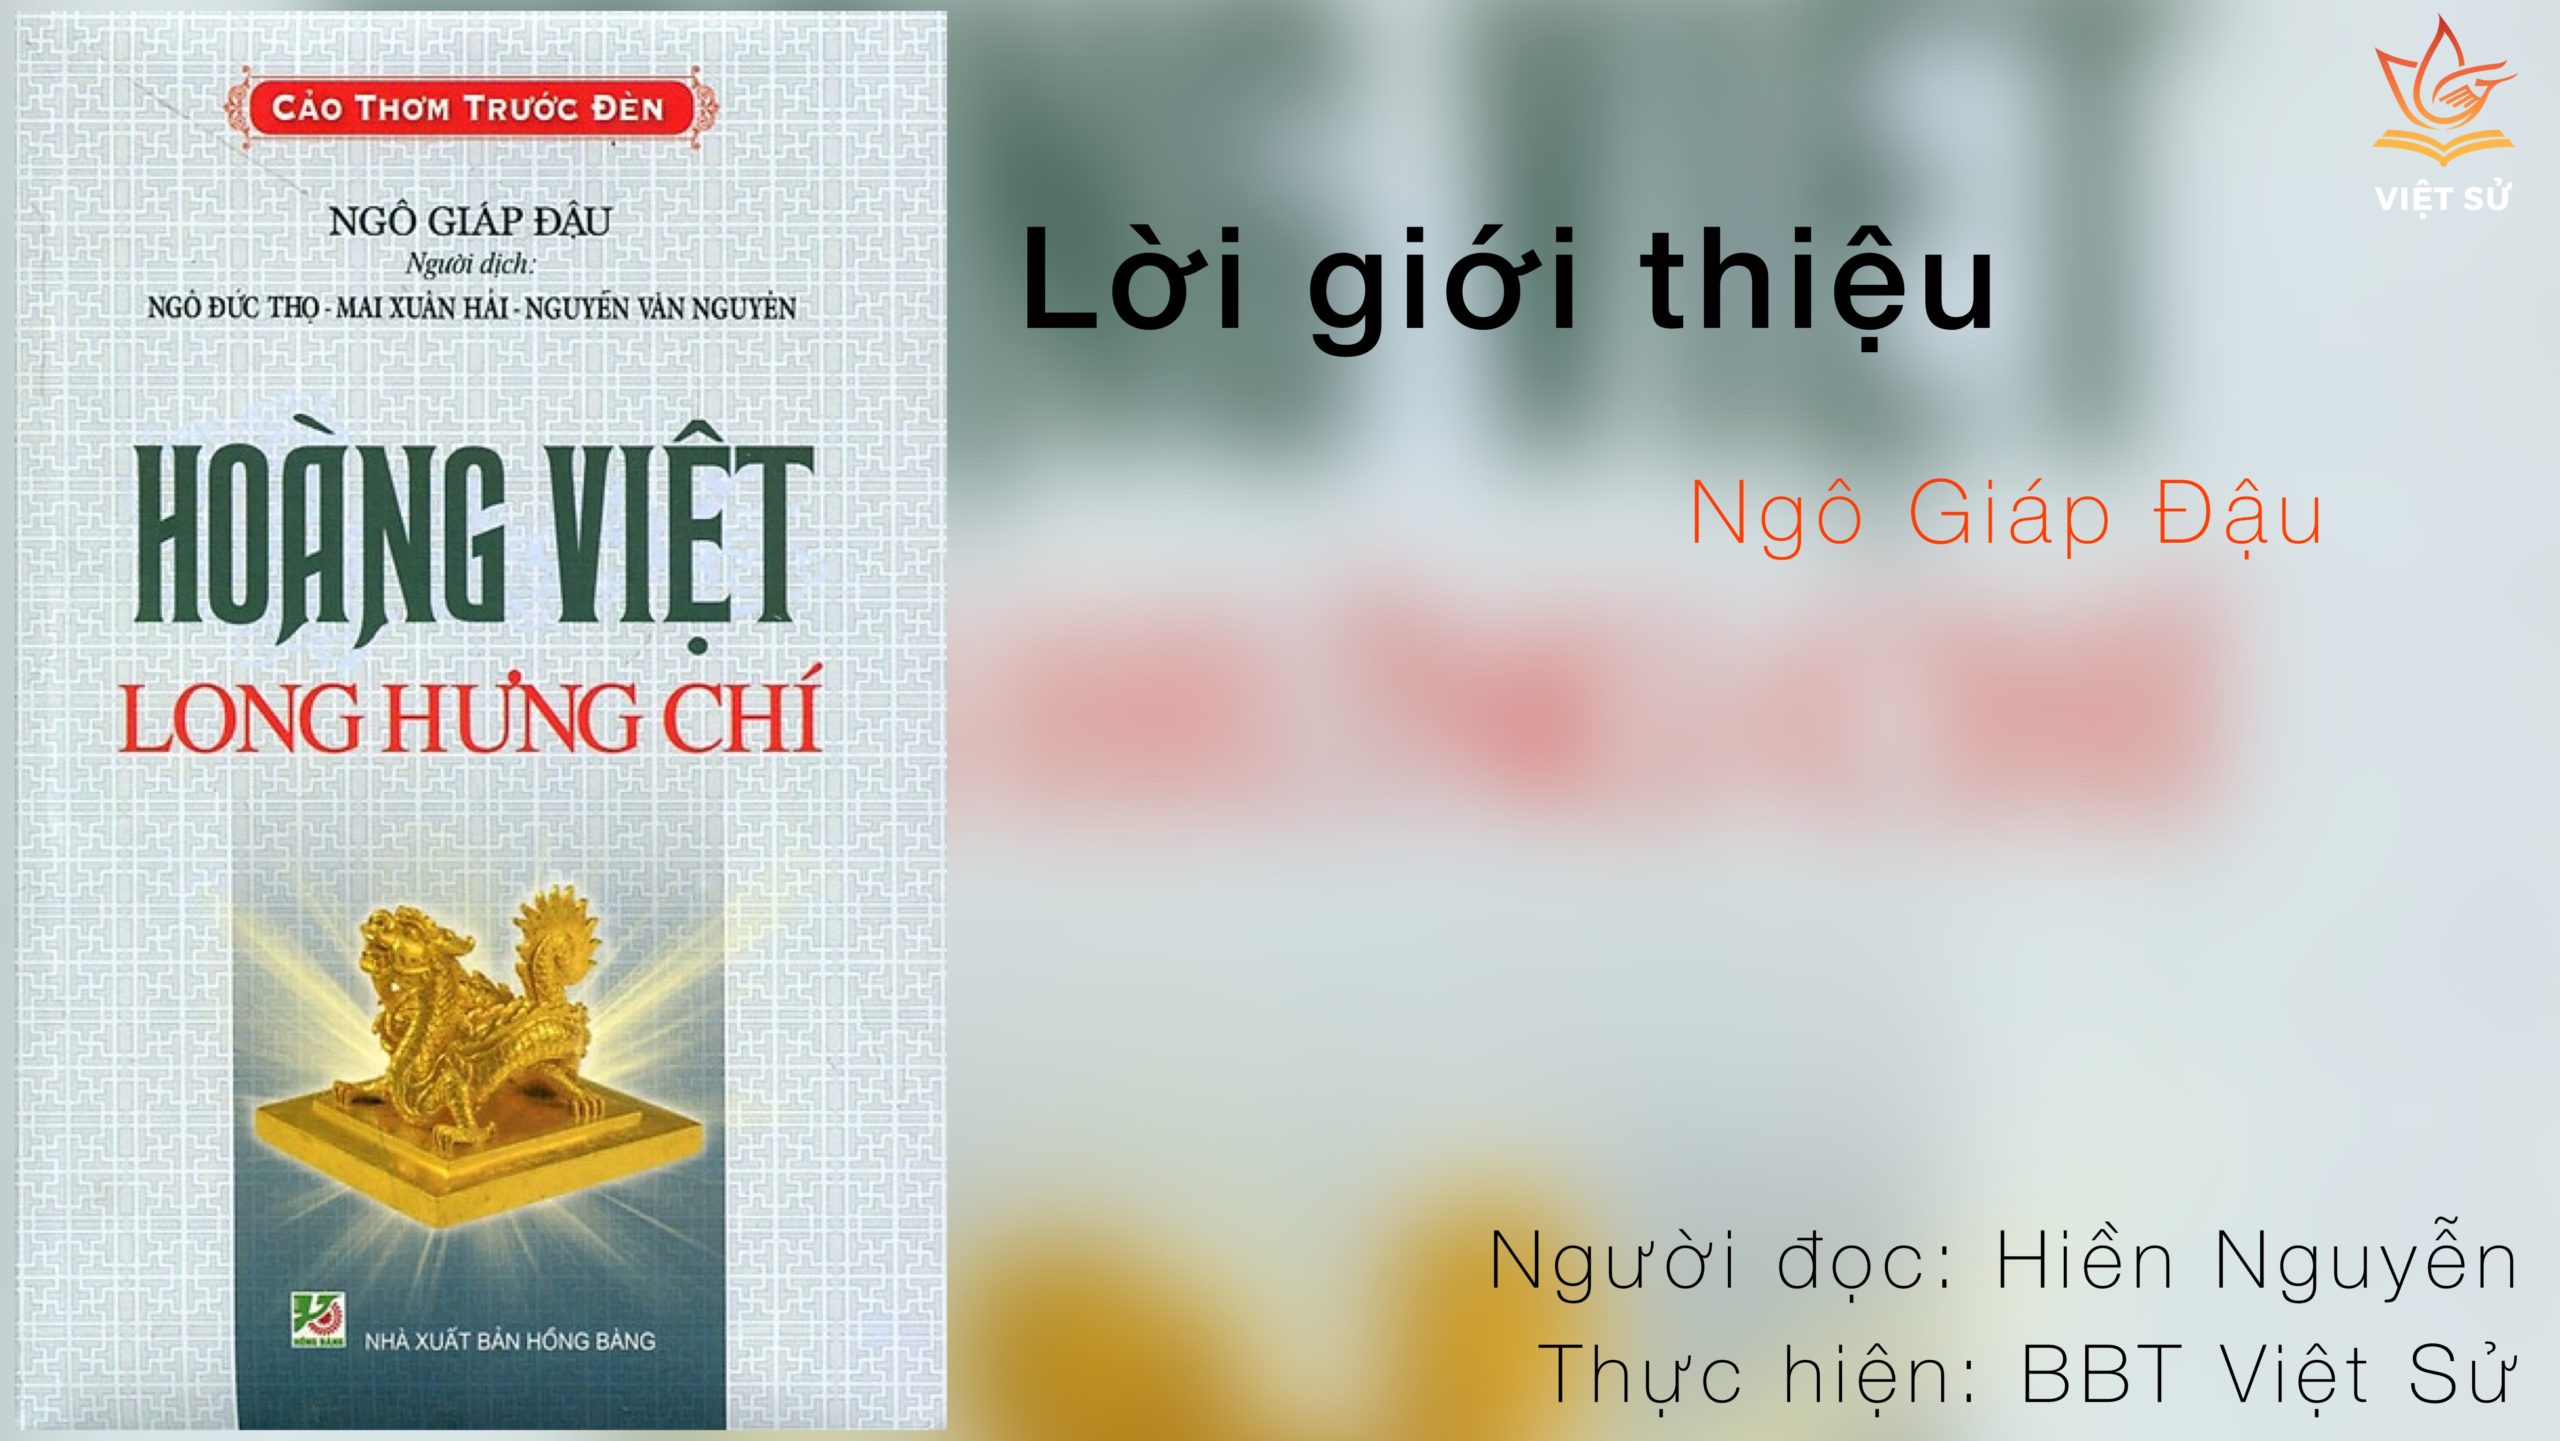 Hoàng Việt Long hưng chí: Mở đầu (audio)